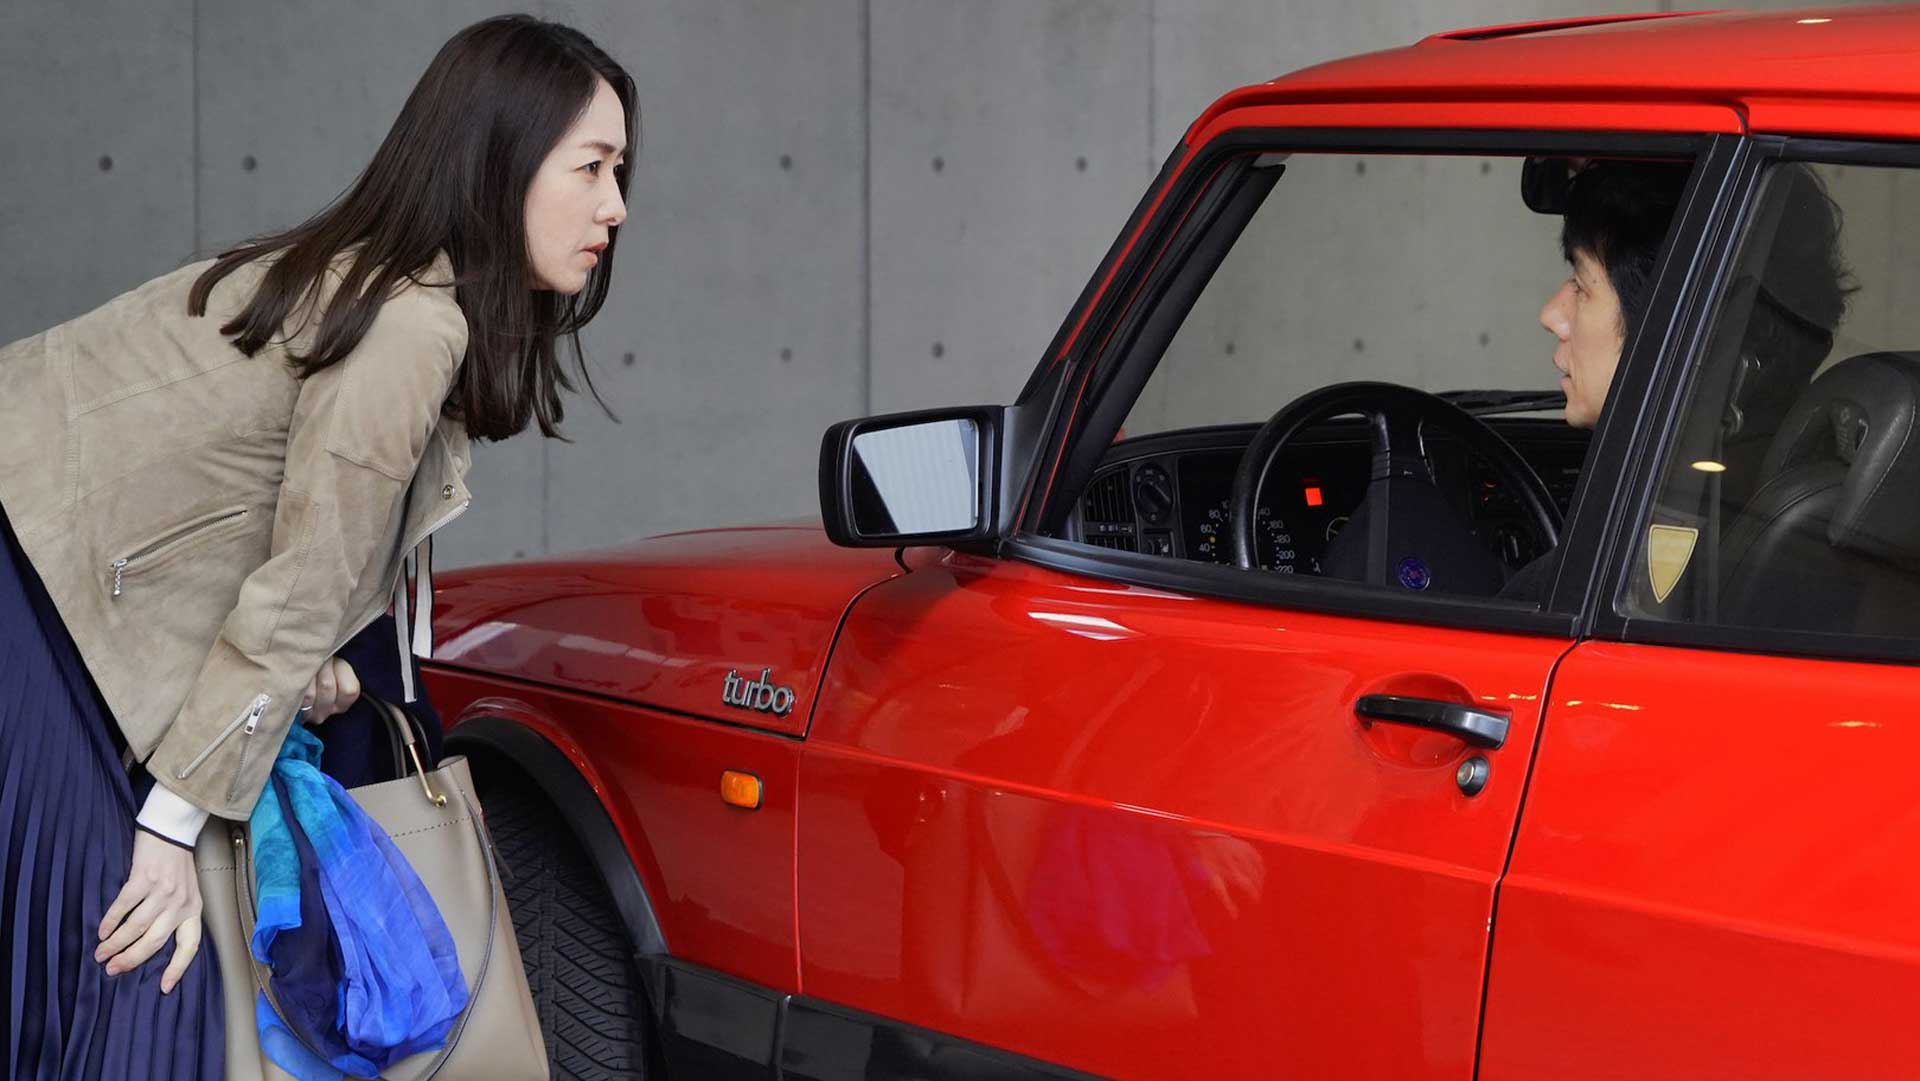 دختر آسیایی در حال نگاه به راننده ماشین قرمزرنگ در فیلم Drive My Car ریوسوکی هاماگوچی، برنده جایزه بهترین فیلمنامه جشنواره کن و حاضر در جشنواره تورنتو